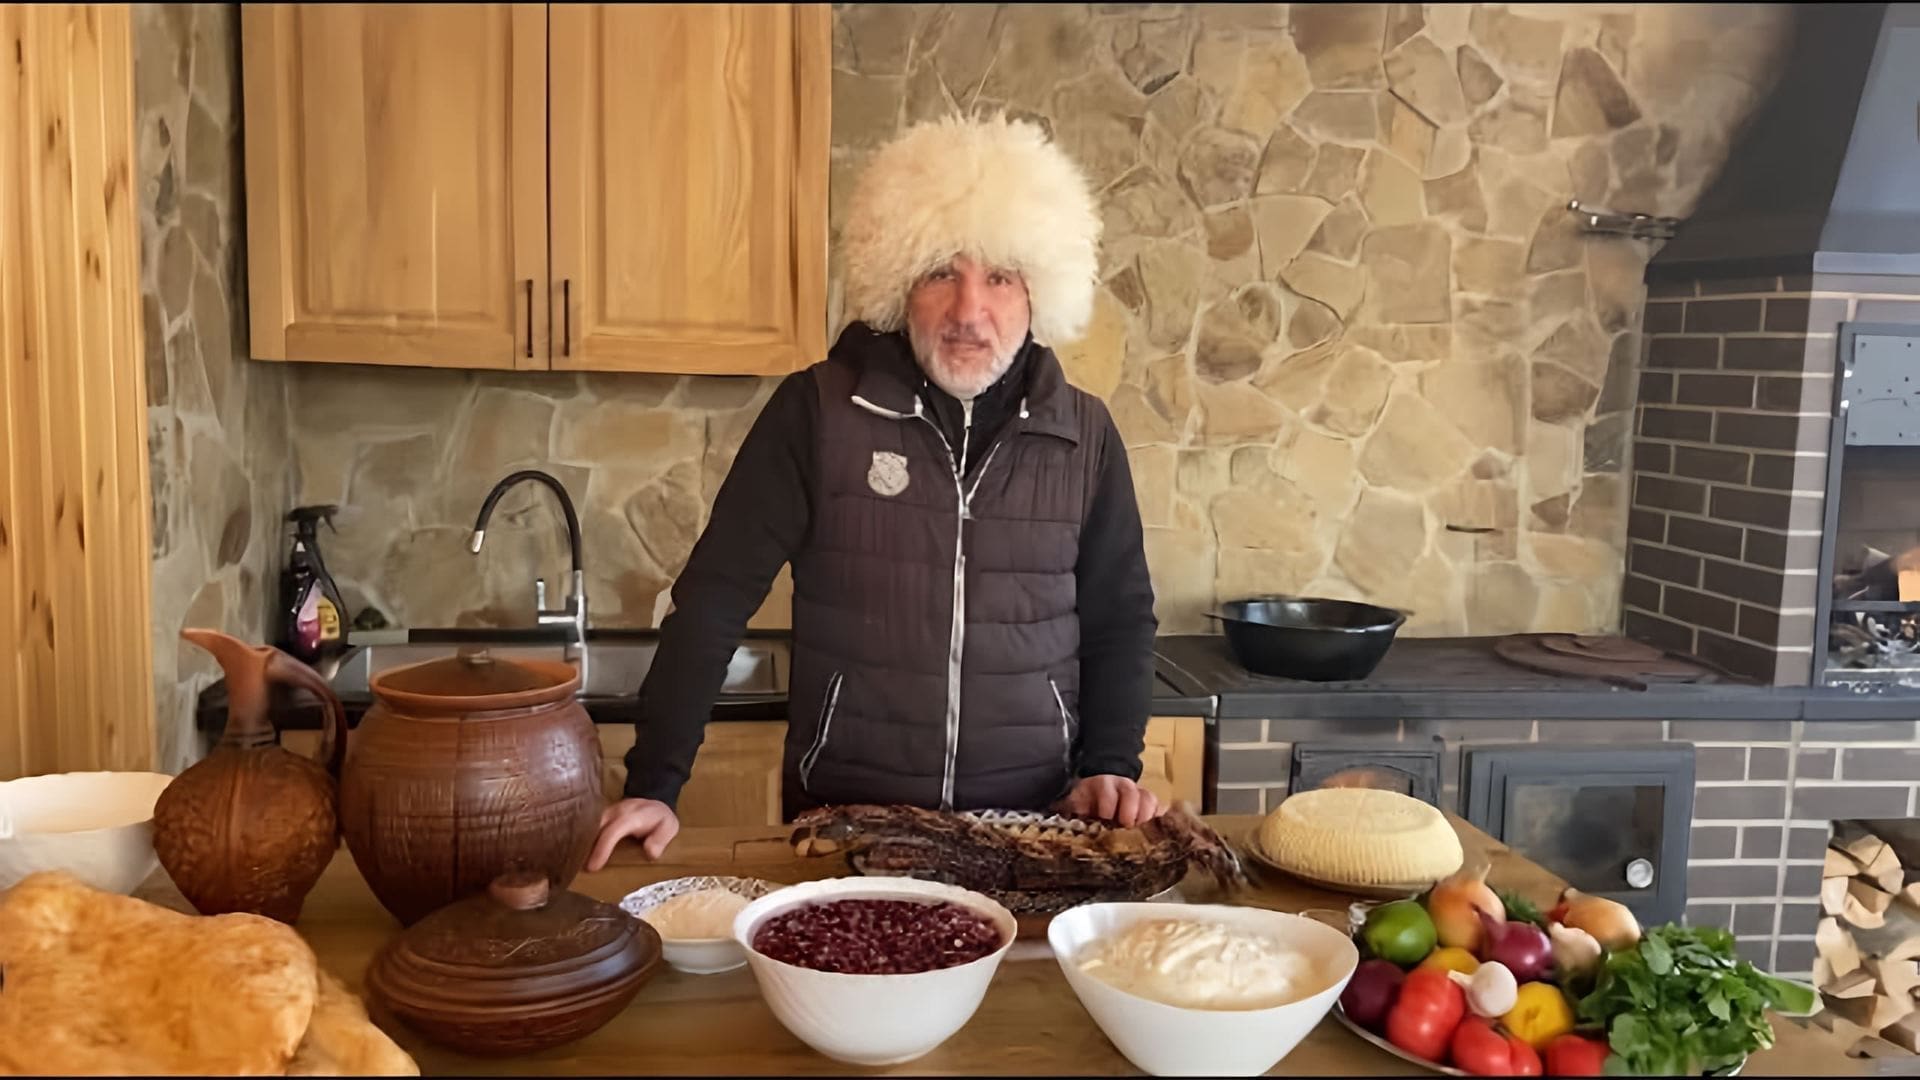 В этом видео демонстрируется приготовление трех осетинских блюд: фасолевого супа кадур, дзыкки и салата из черной редьки